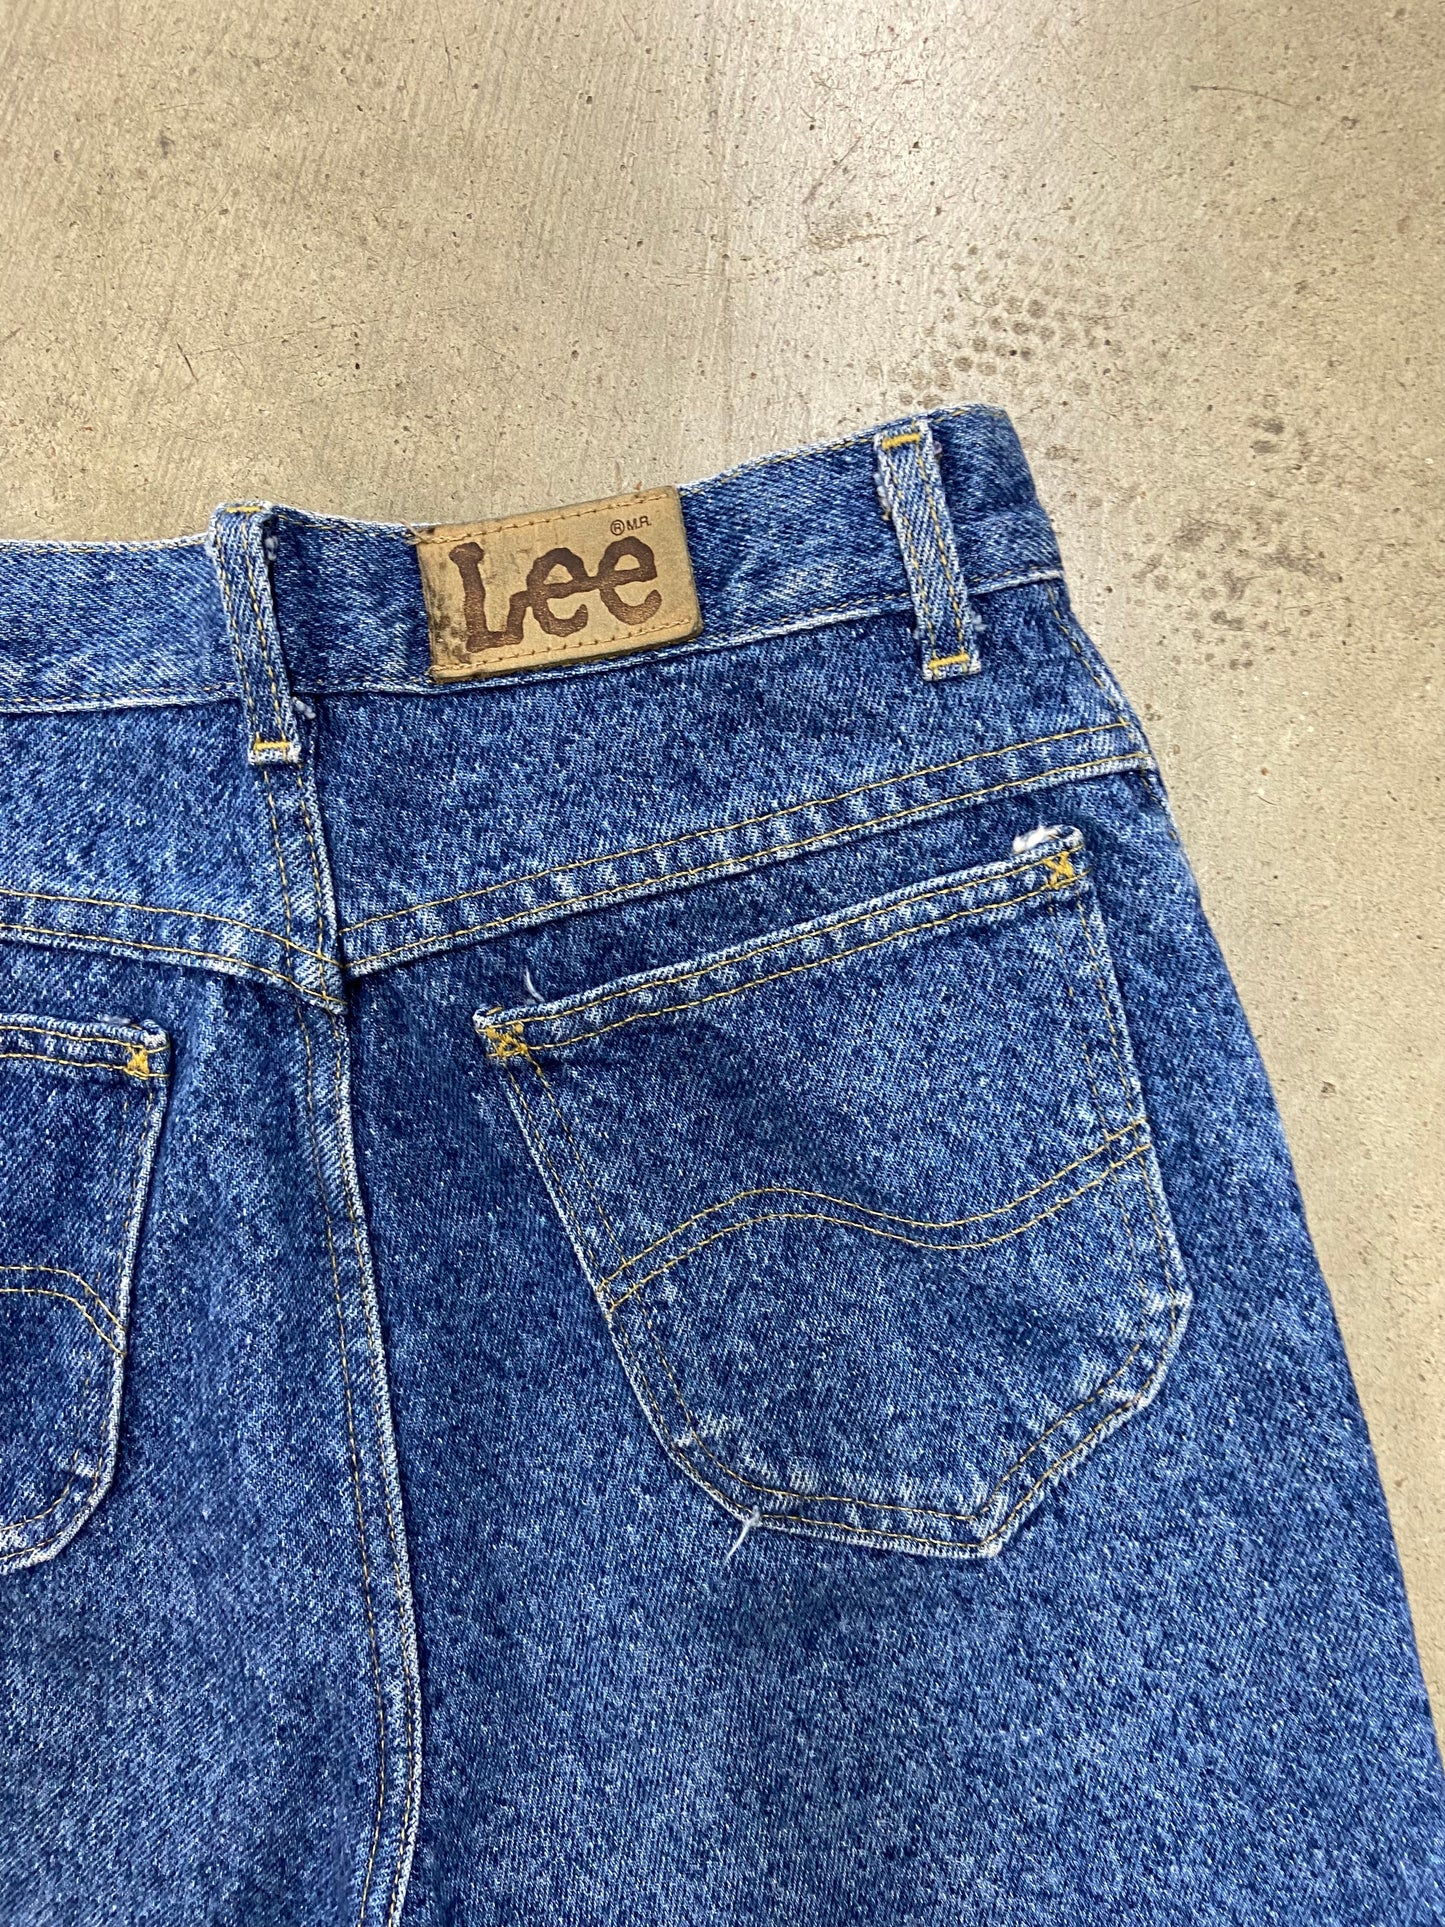 VTG Wmn's Lee Denim Blue Washed Jean Shorts Sz 26x30